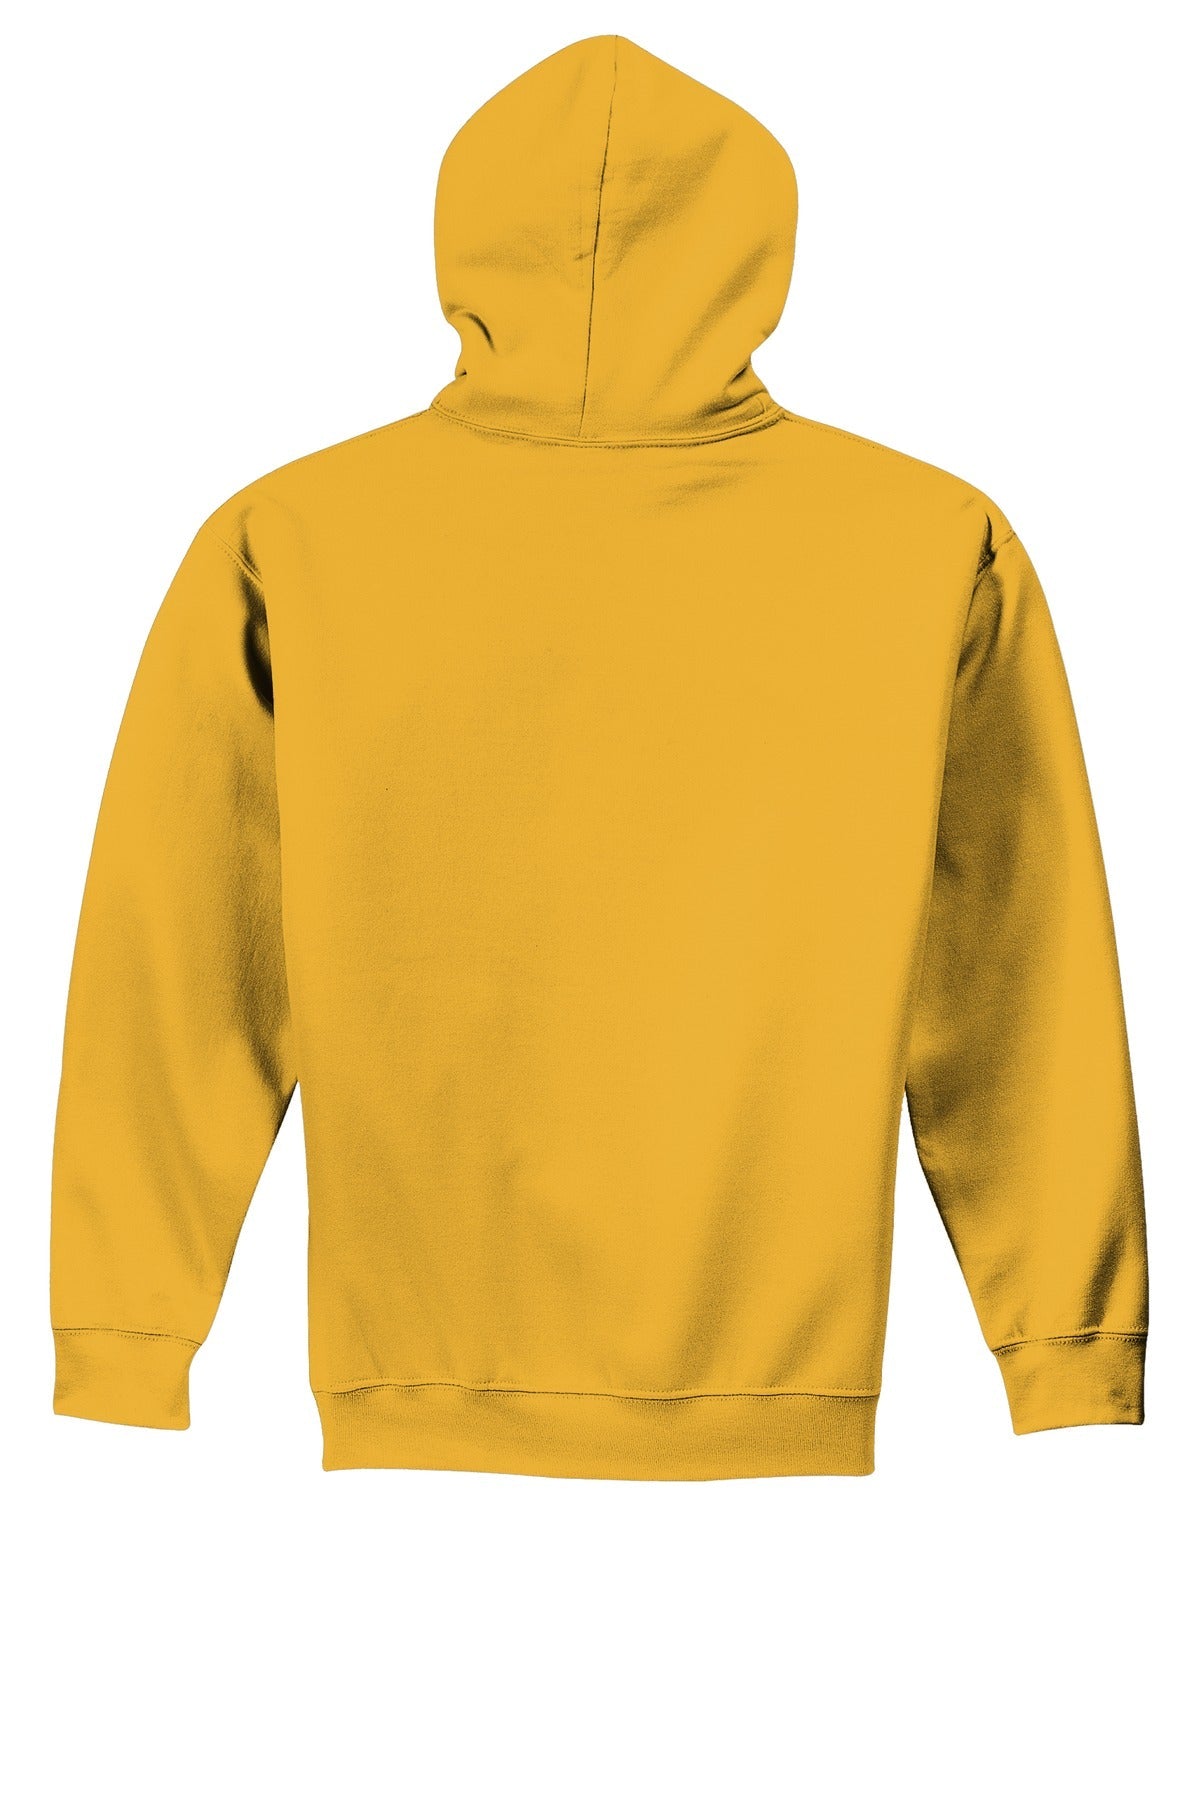 Gildan® - Youth Heavy Blend™ Hooded Sweatshirt. 18500B [Gold] - DFW Impression